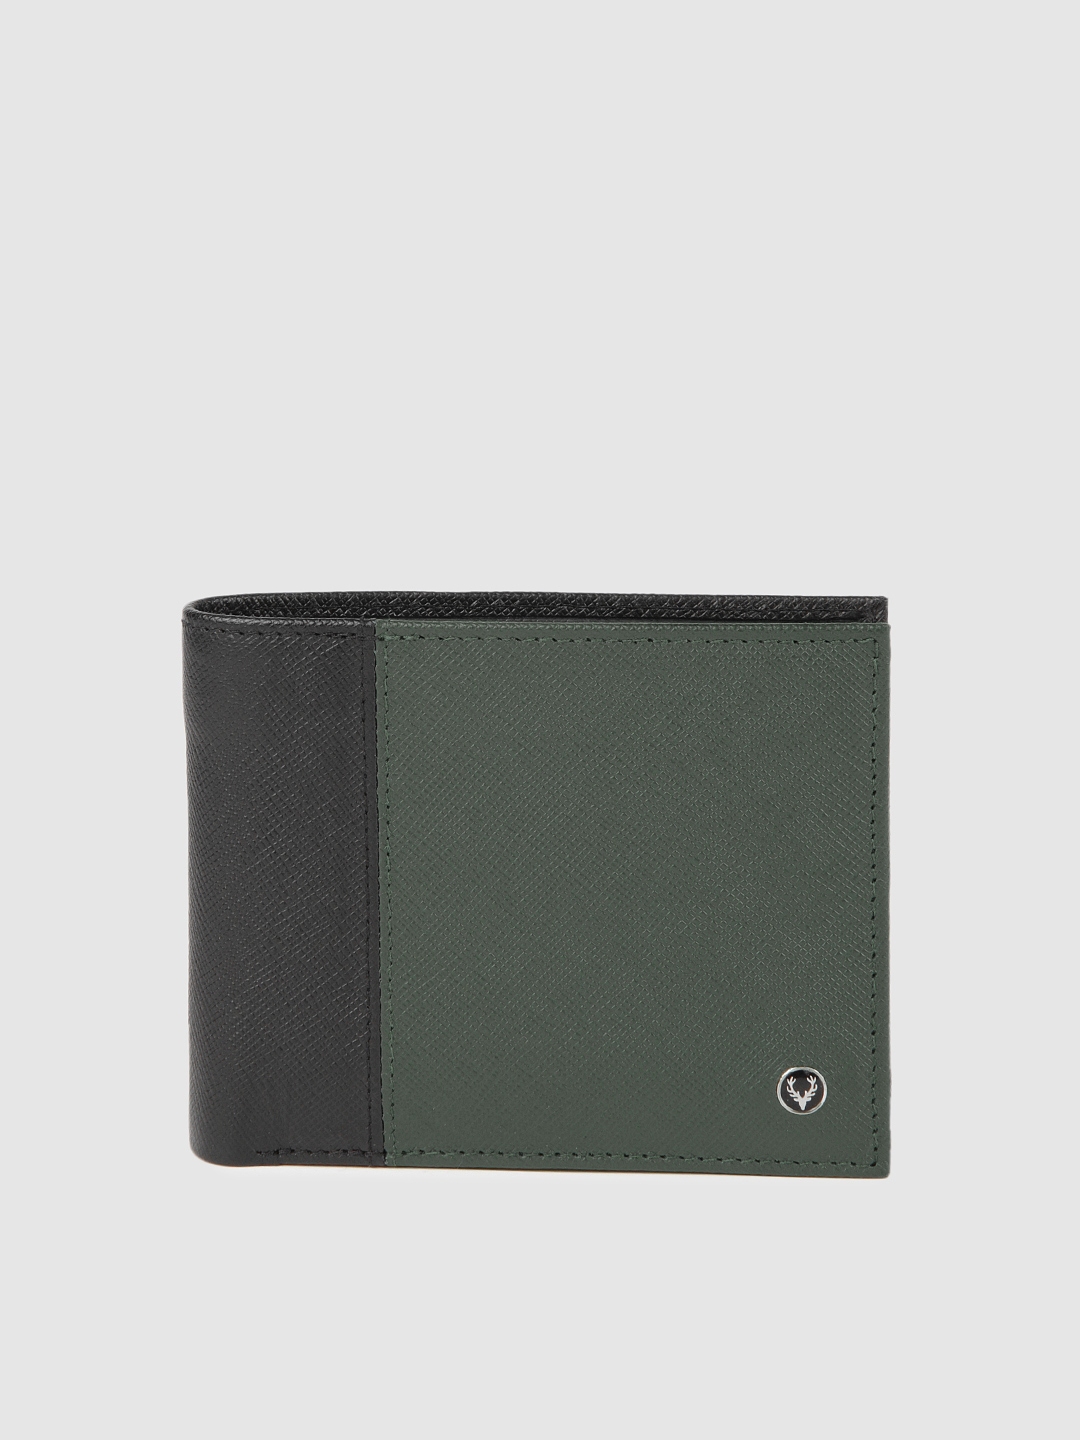 Buy Allen Solly Men Black & Green Colourblocked Two Fold Leather Wallet ...